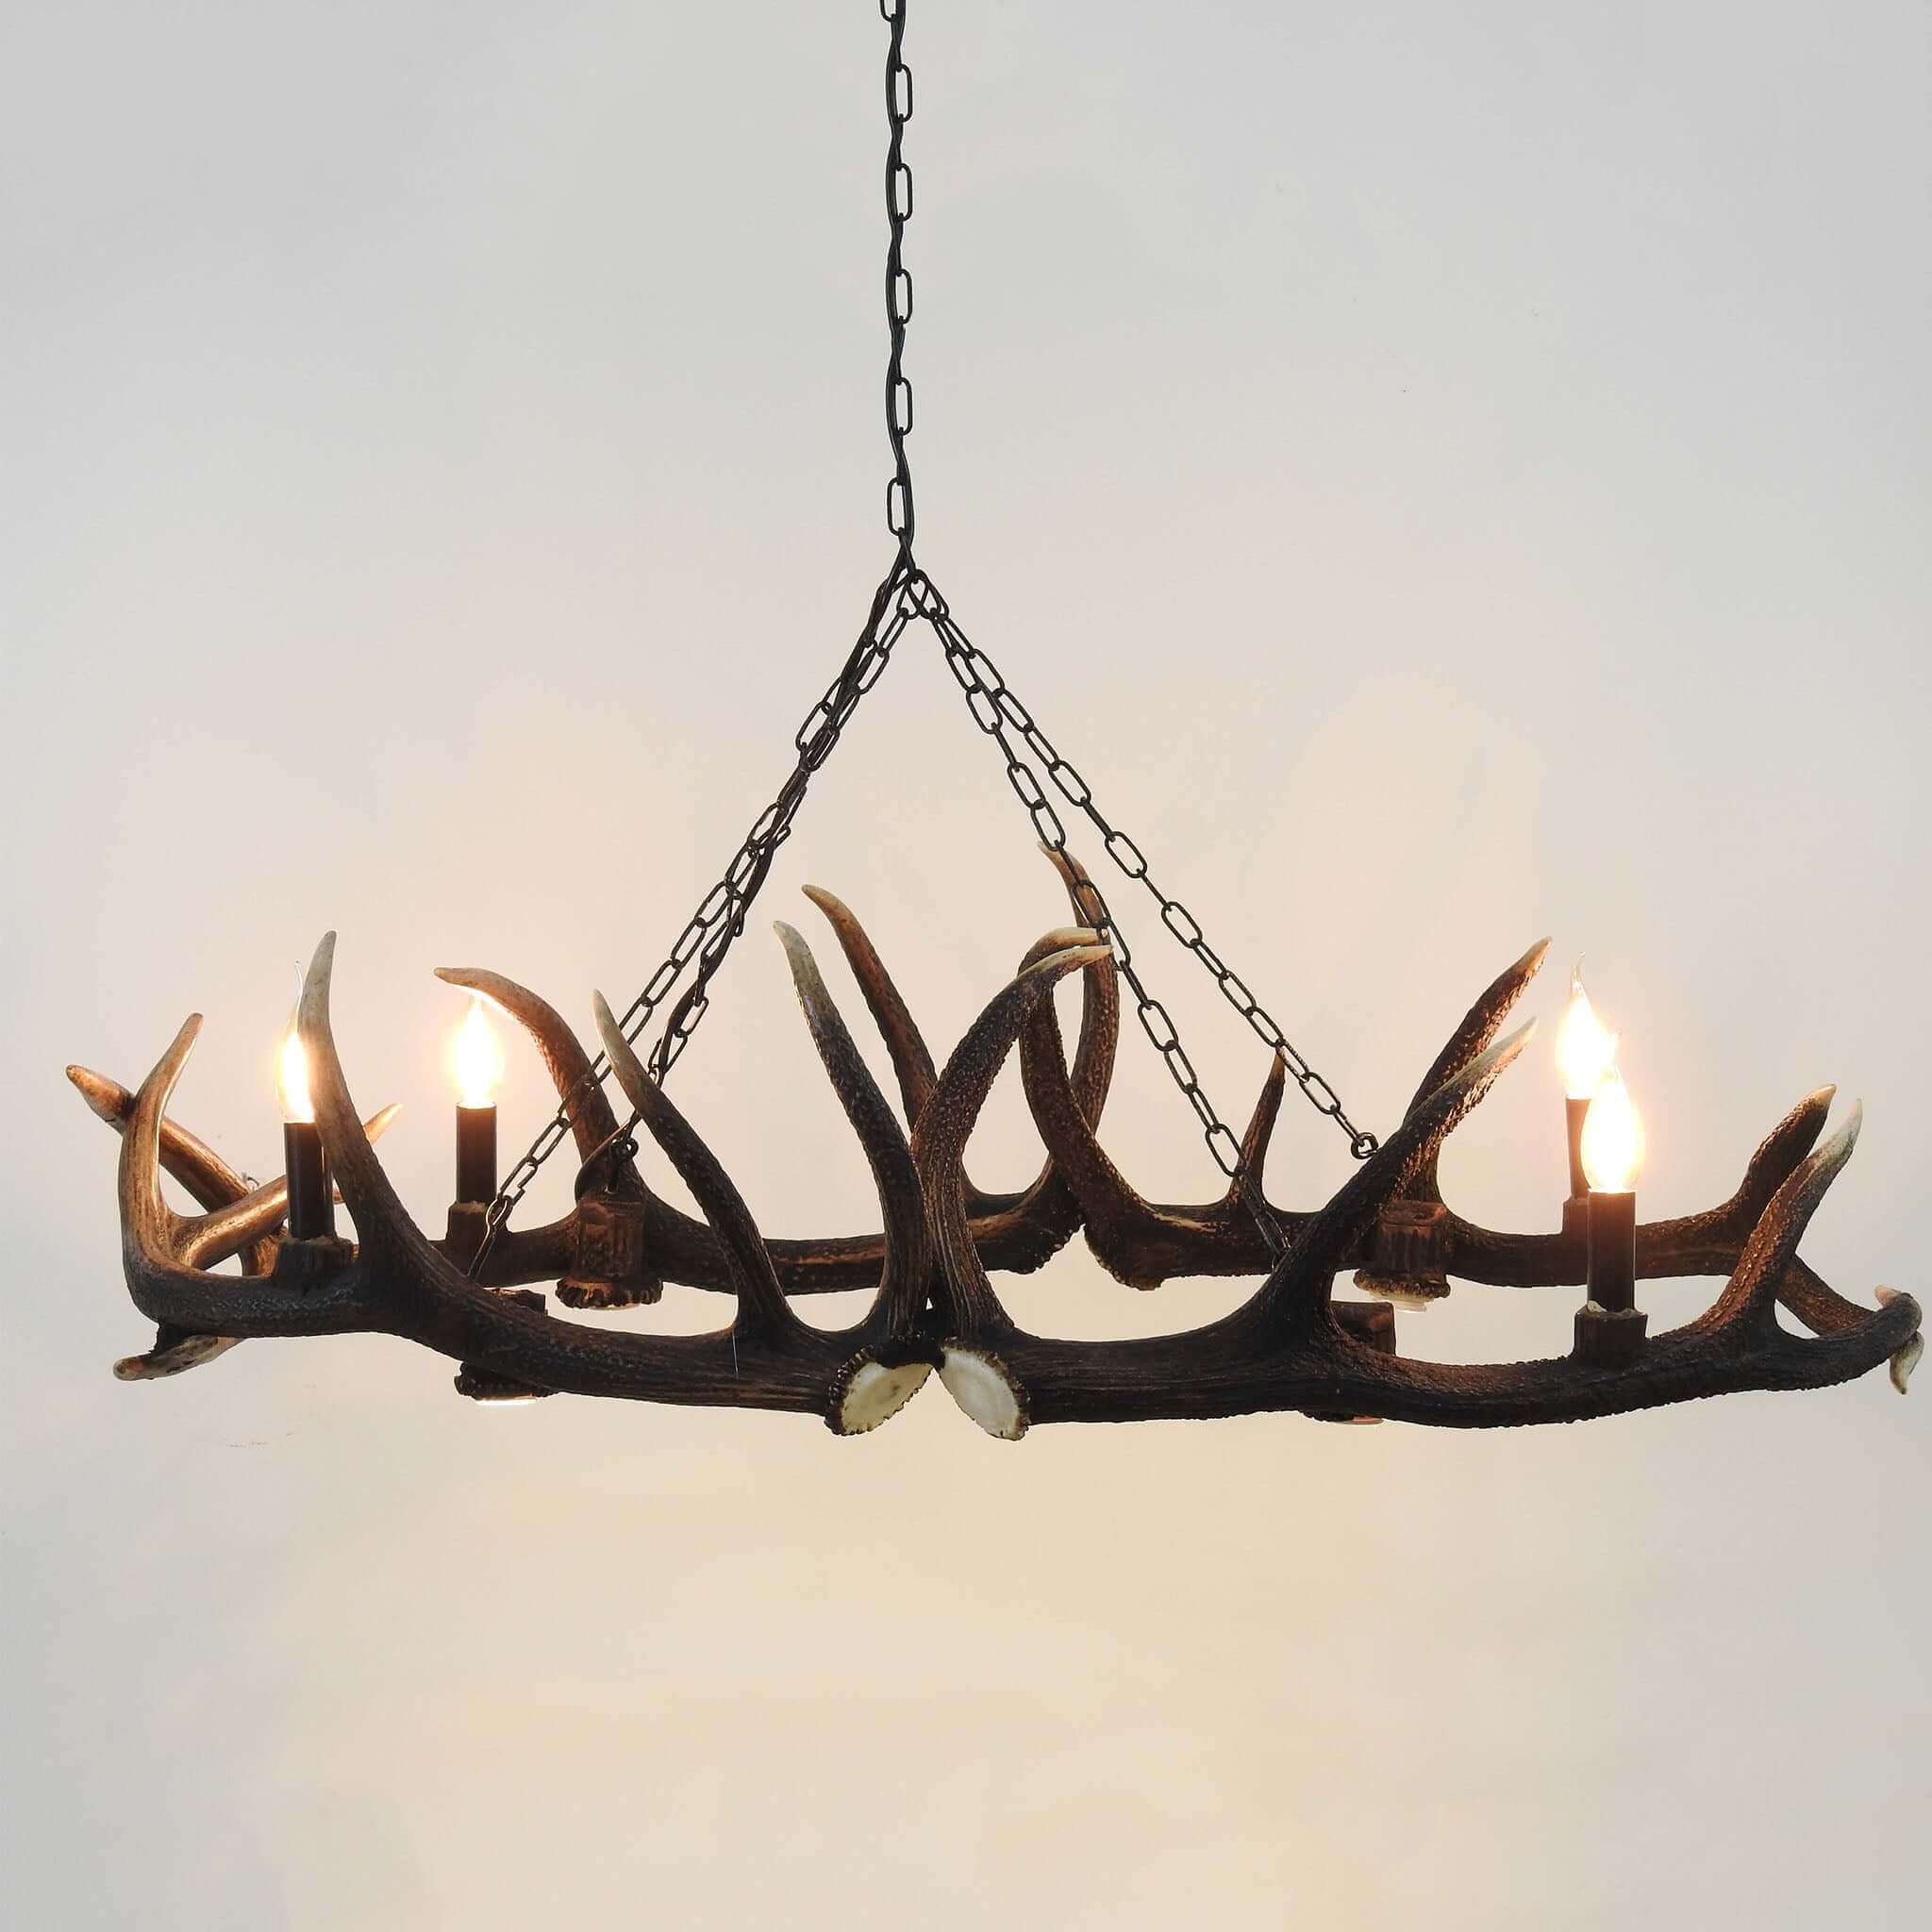 Deer antleer chandelier for dinning room.